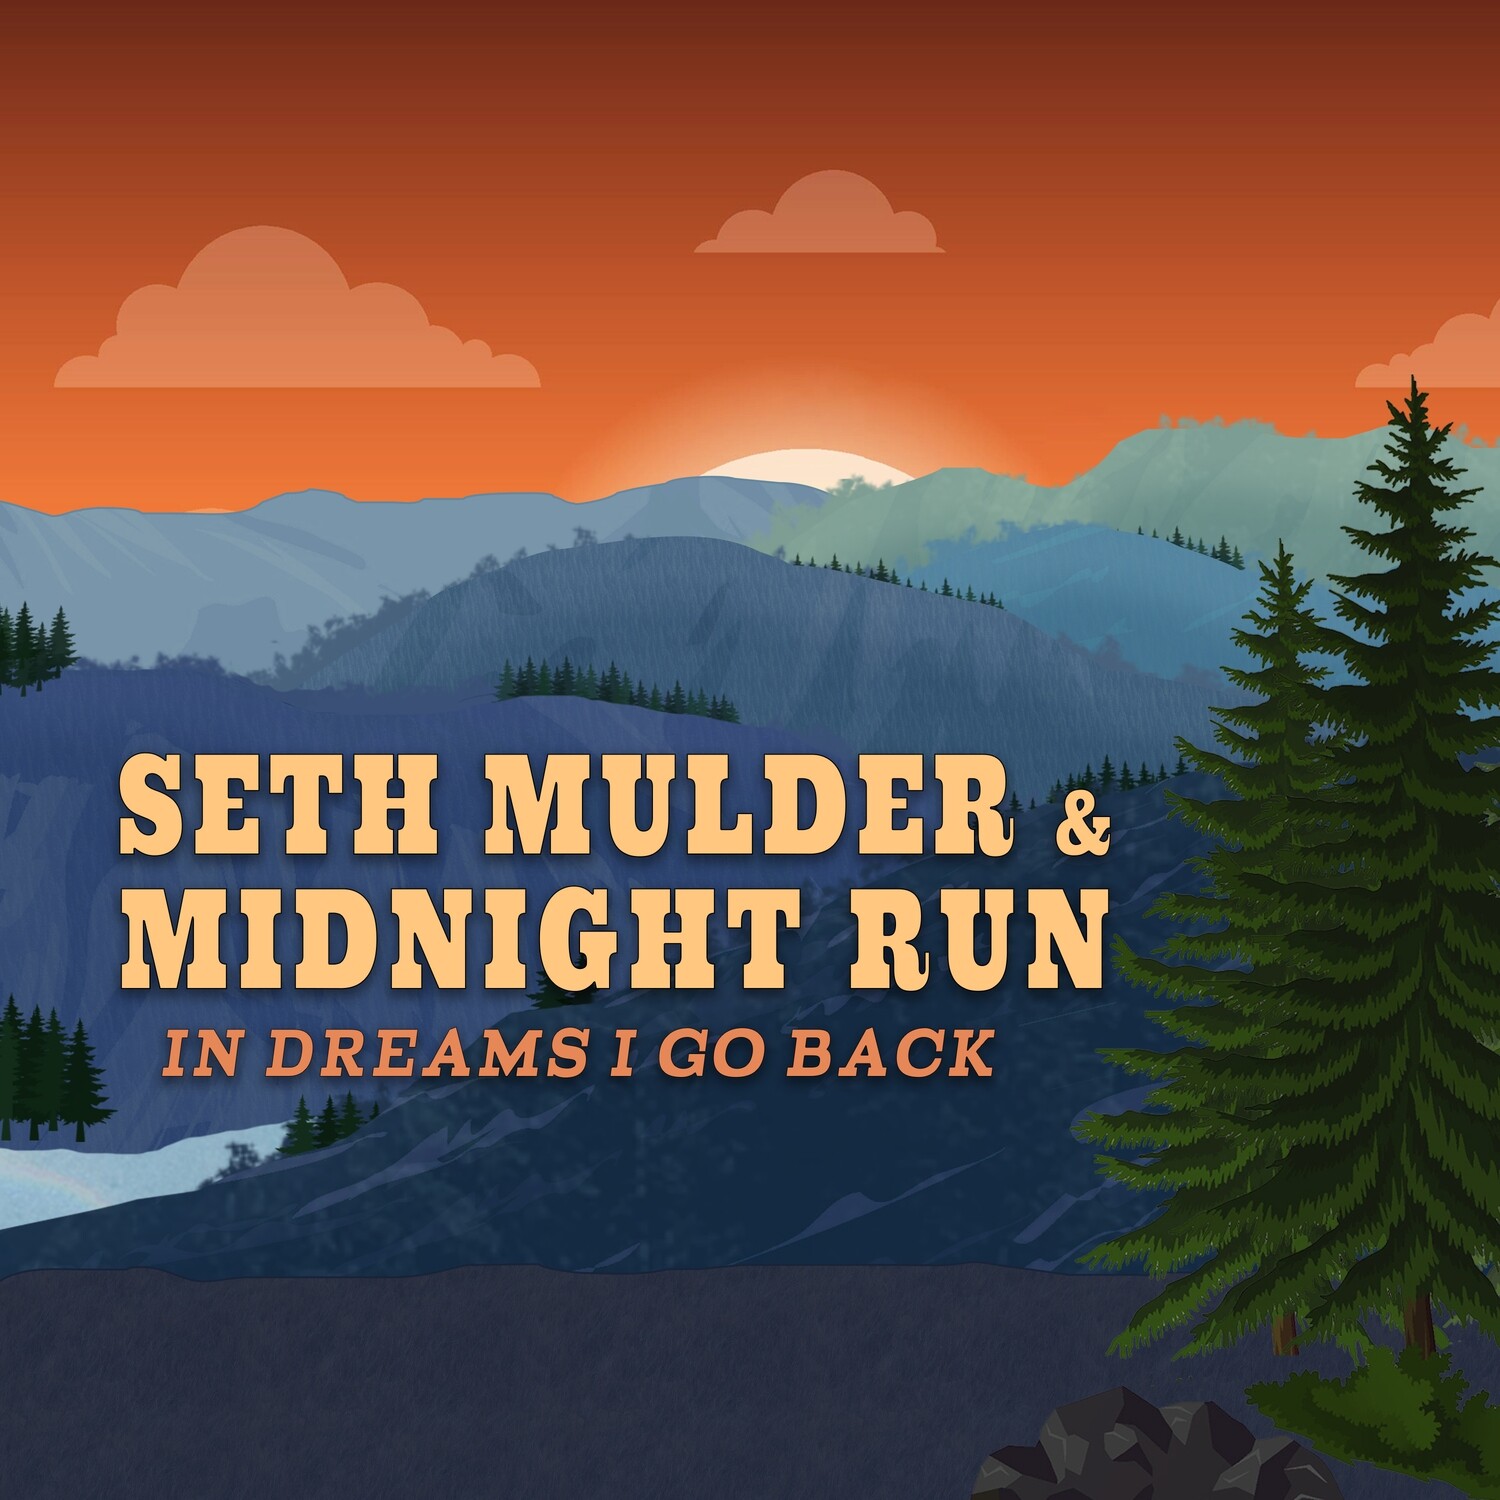 Seth Mulder & Midnight Run - In Dreams I Go Back (ships 9/1/22)